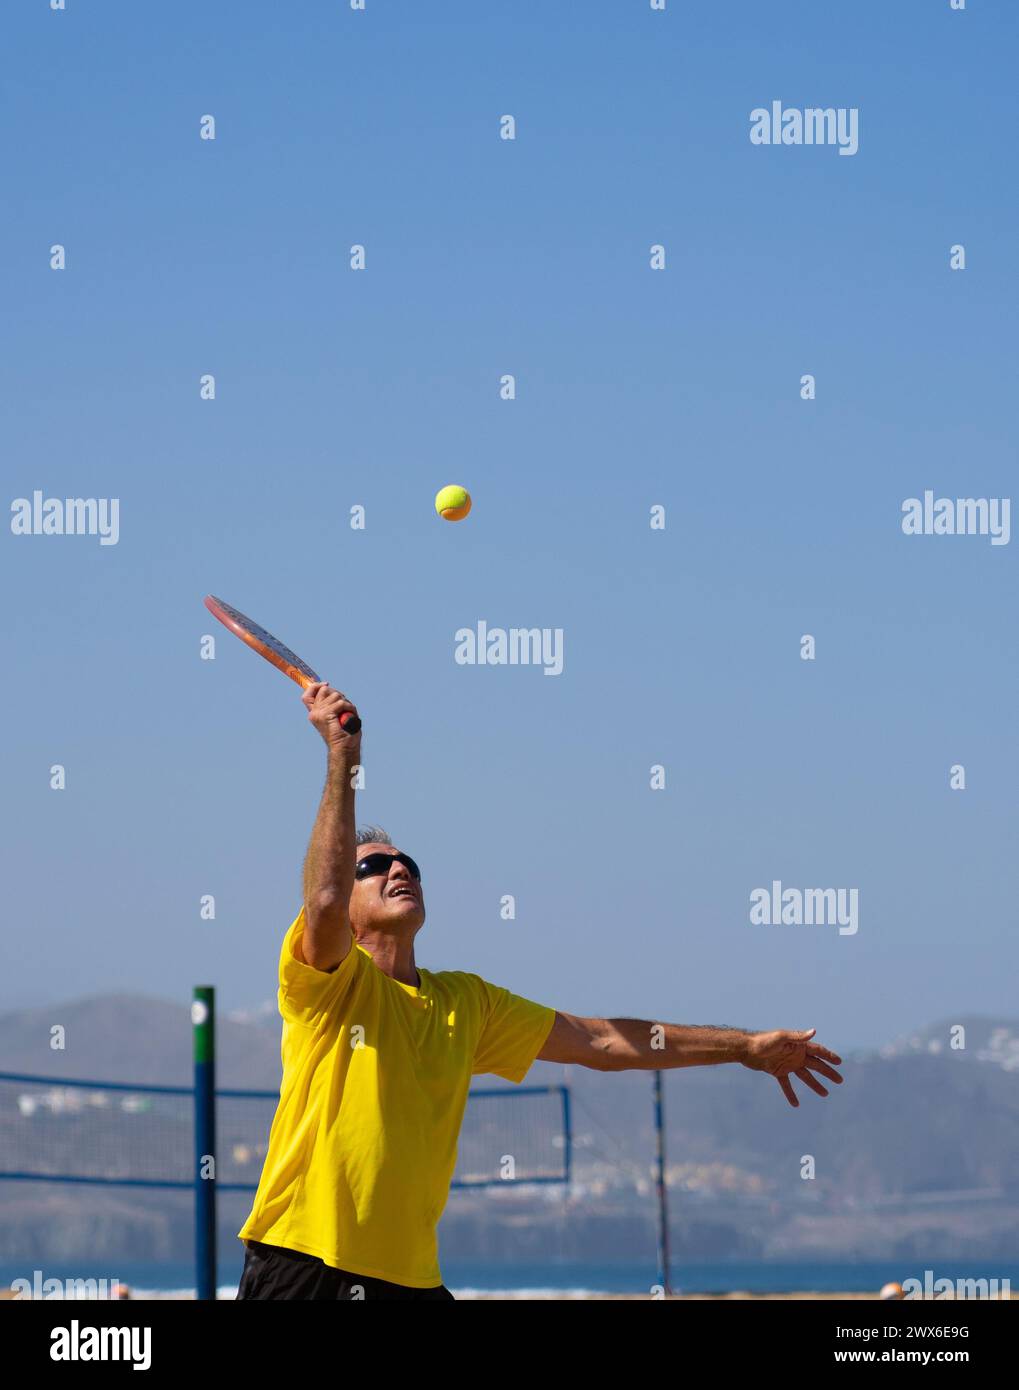 homme de 60 ans jouant au tennis de plage Banque D'Images